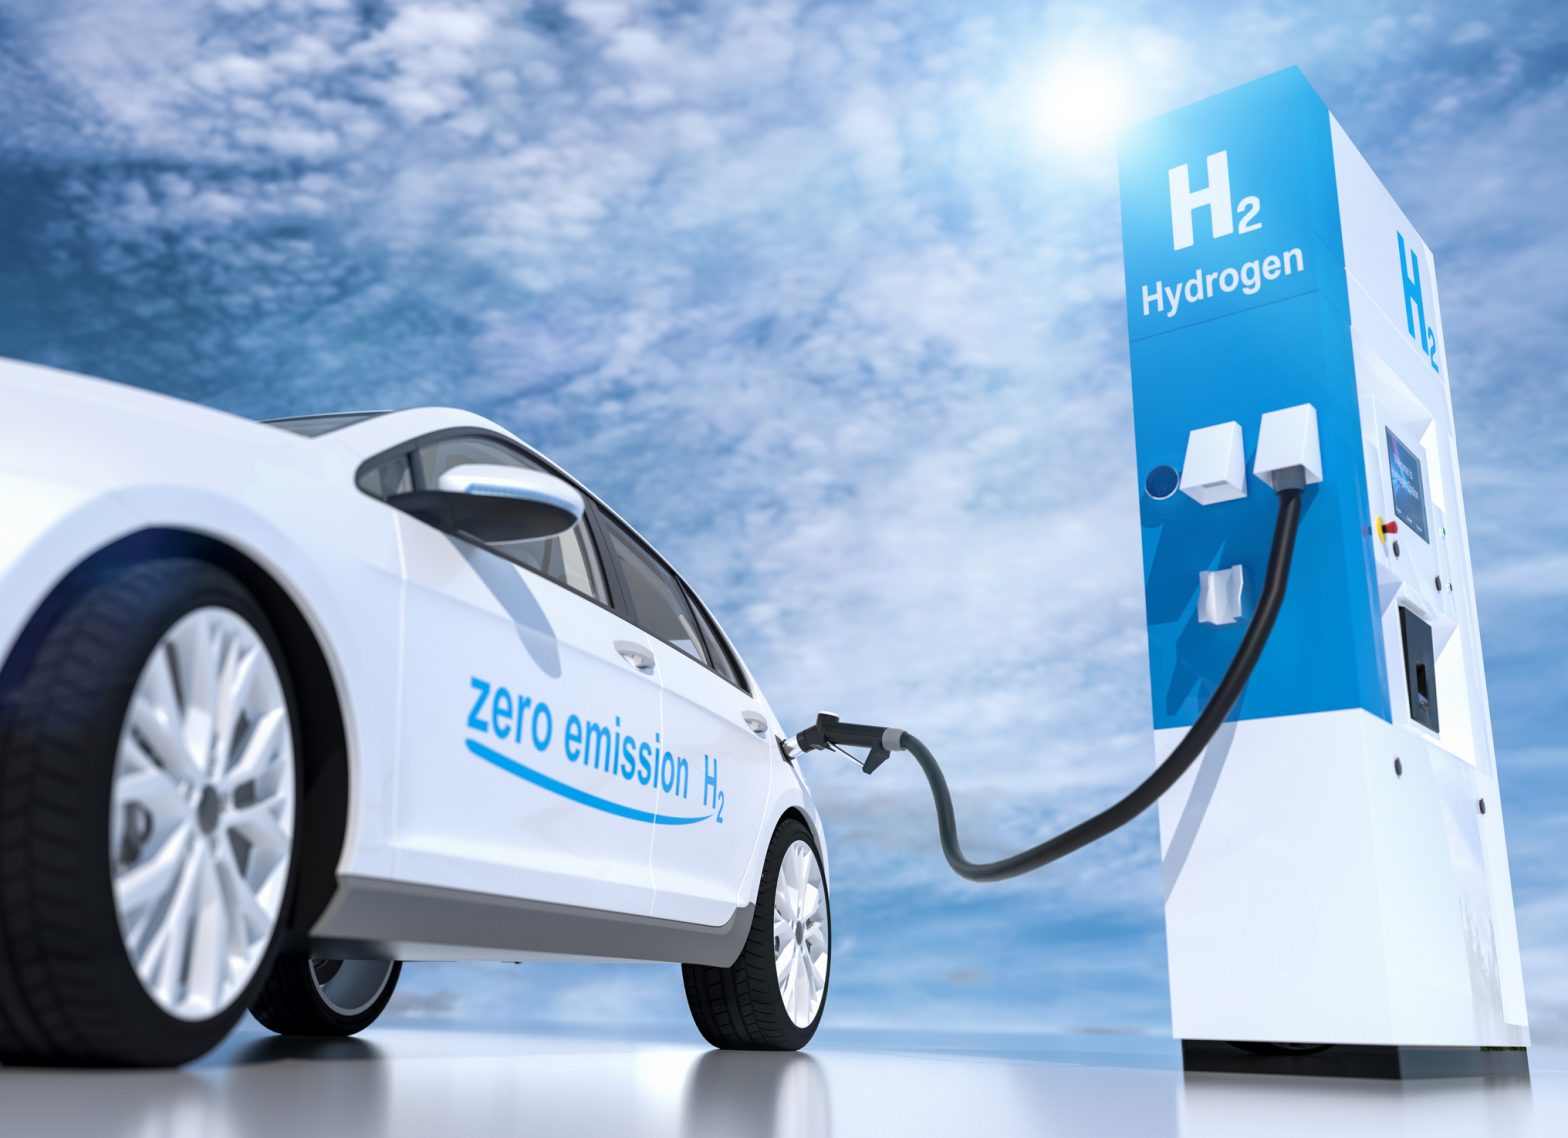 financialounge.com L’idrogeno verde può rivoluzionare l’energia sostenibile. Ecco perché